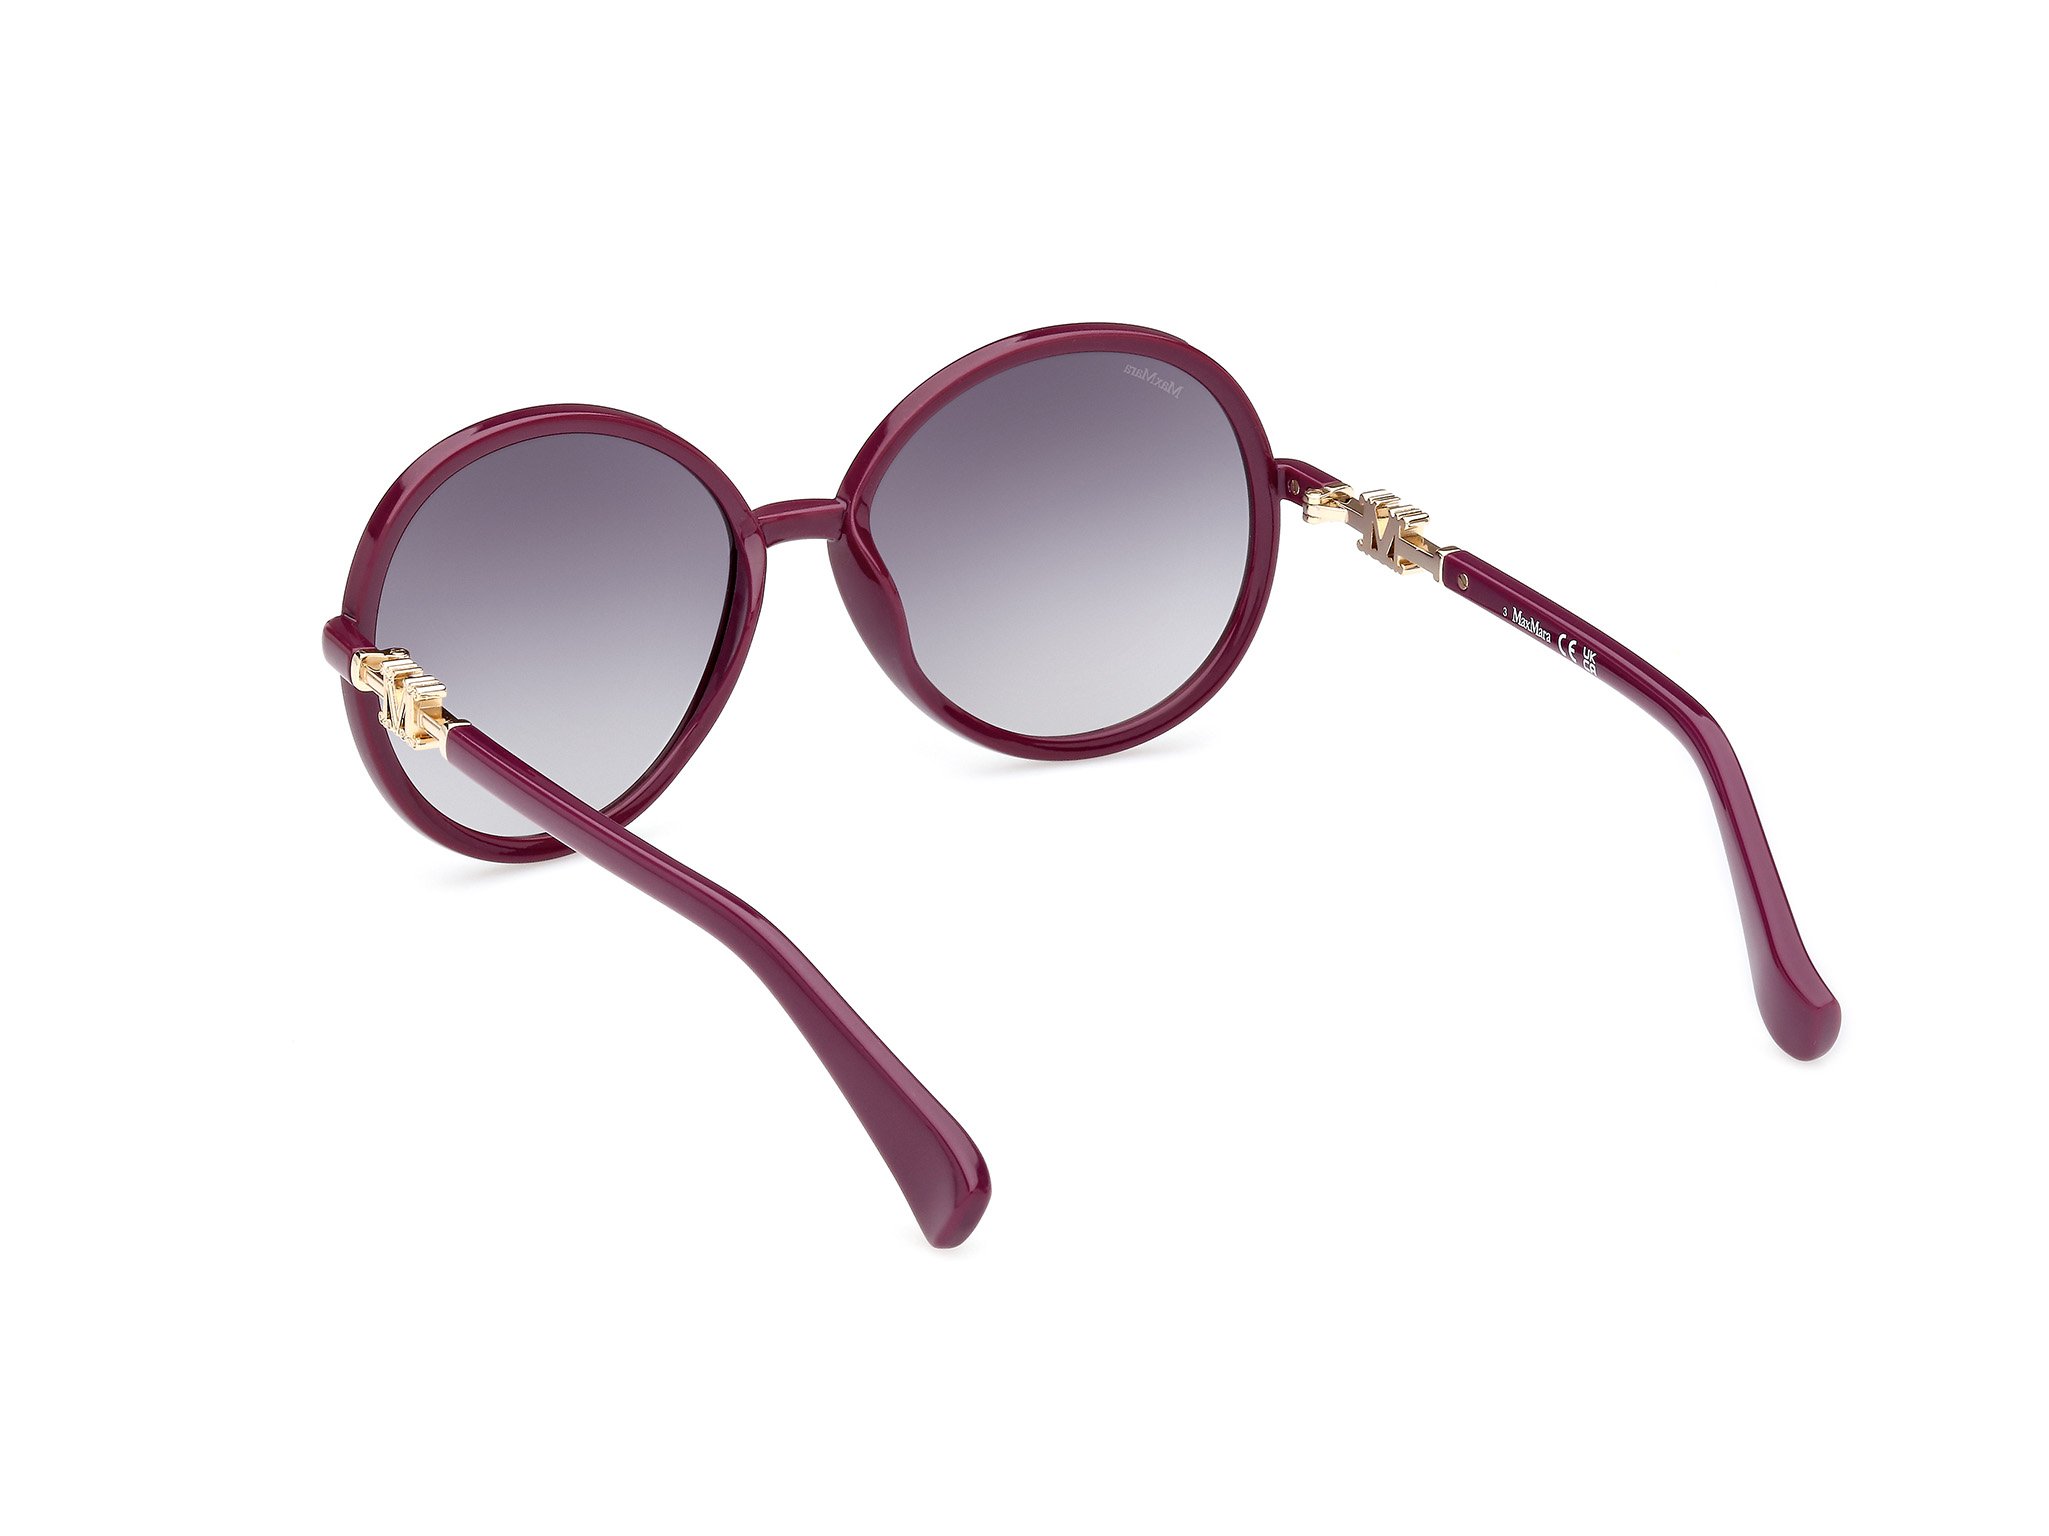 Das Bild zeigt die Sonnenbrille MM0065 75B von der Marke Max Mara in Violett.